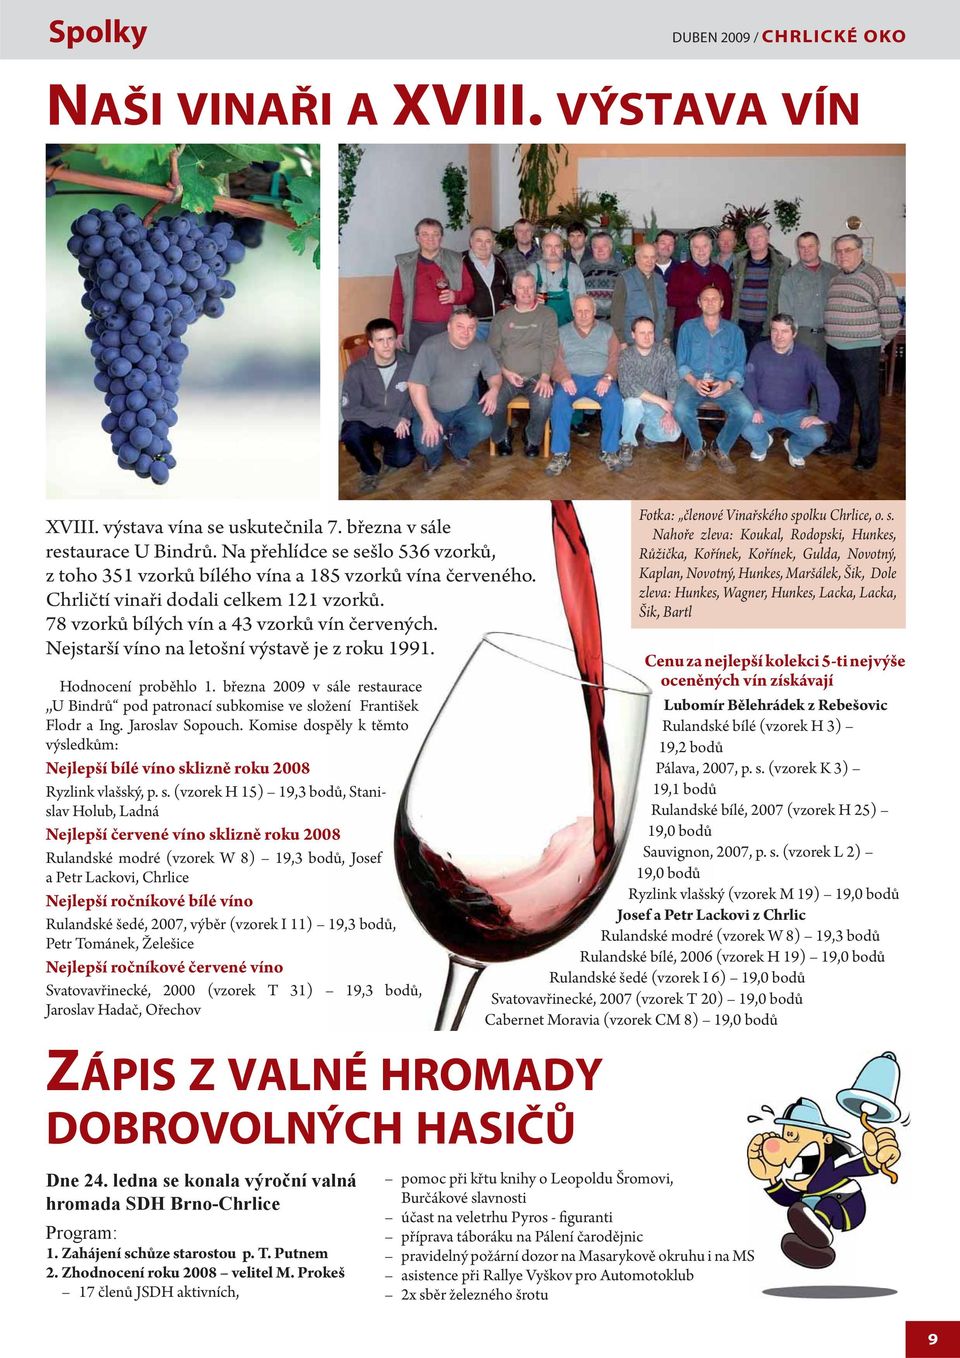 Nejstarší víno na letošní výstavě je z roku 1991. Hodnocení proběhlo 1. března 2009 v sále restaurace,,u Bindrů pod patronací subkomise ve složení František Flodr a Ing. Jaroslav Sopouch.